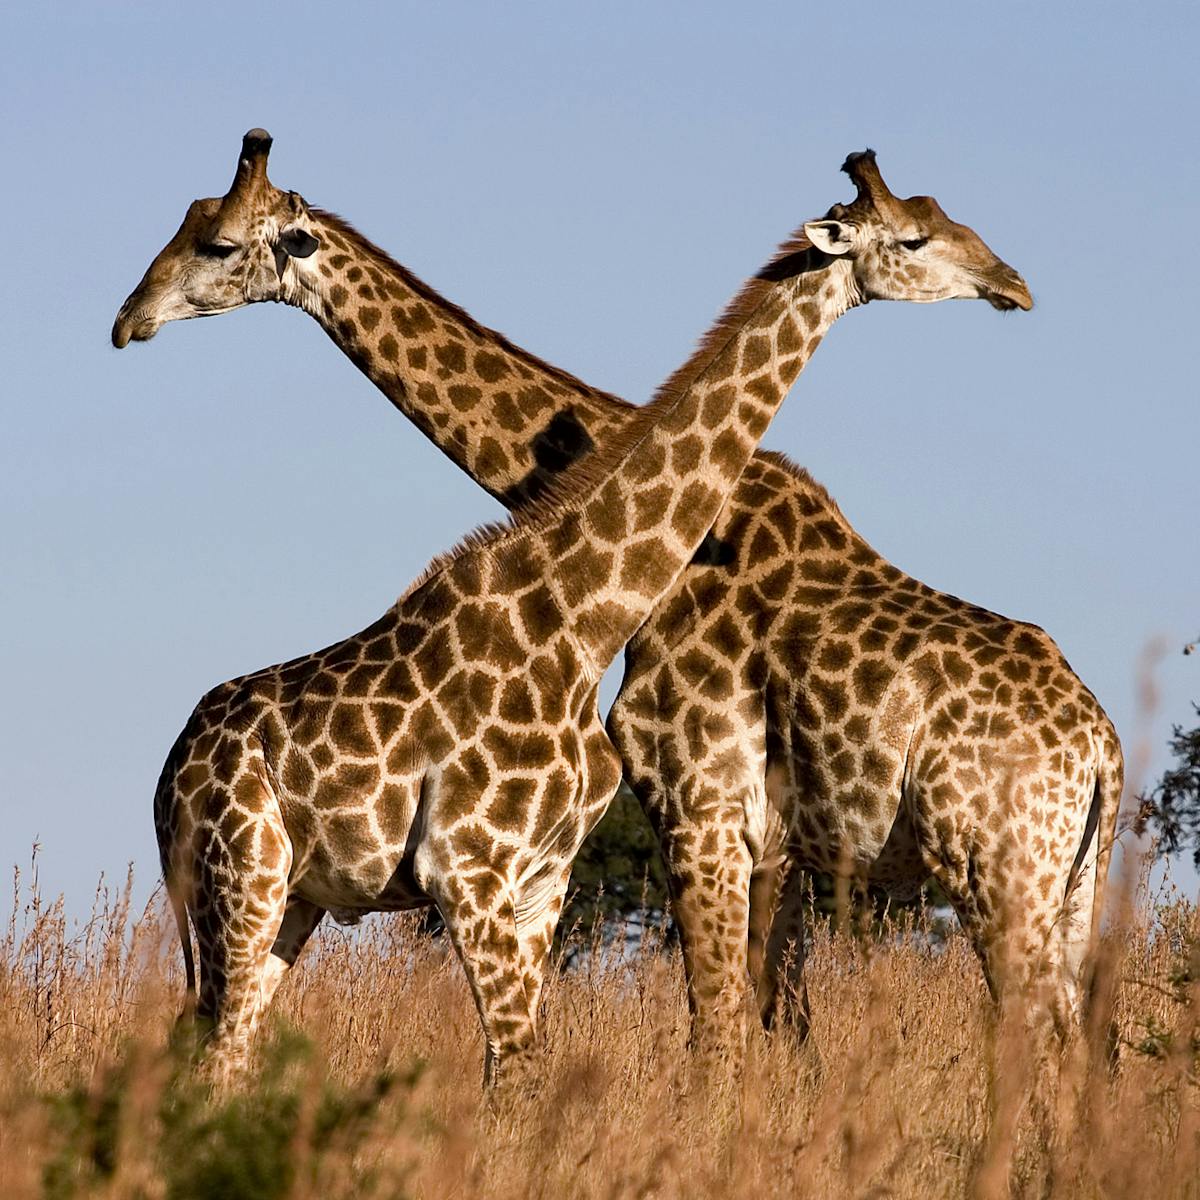 Giraffes aren't dangerous – but they will soon be endangered